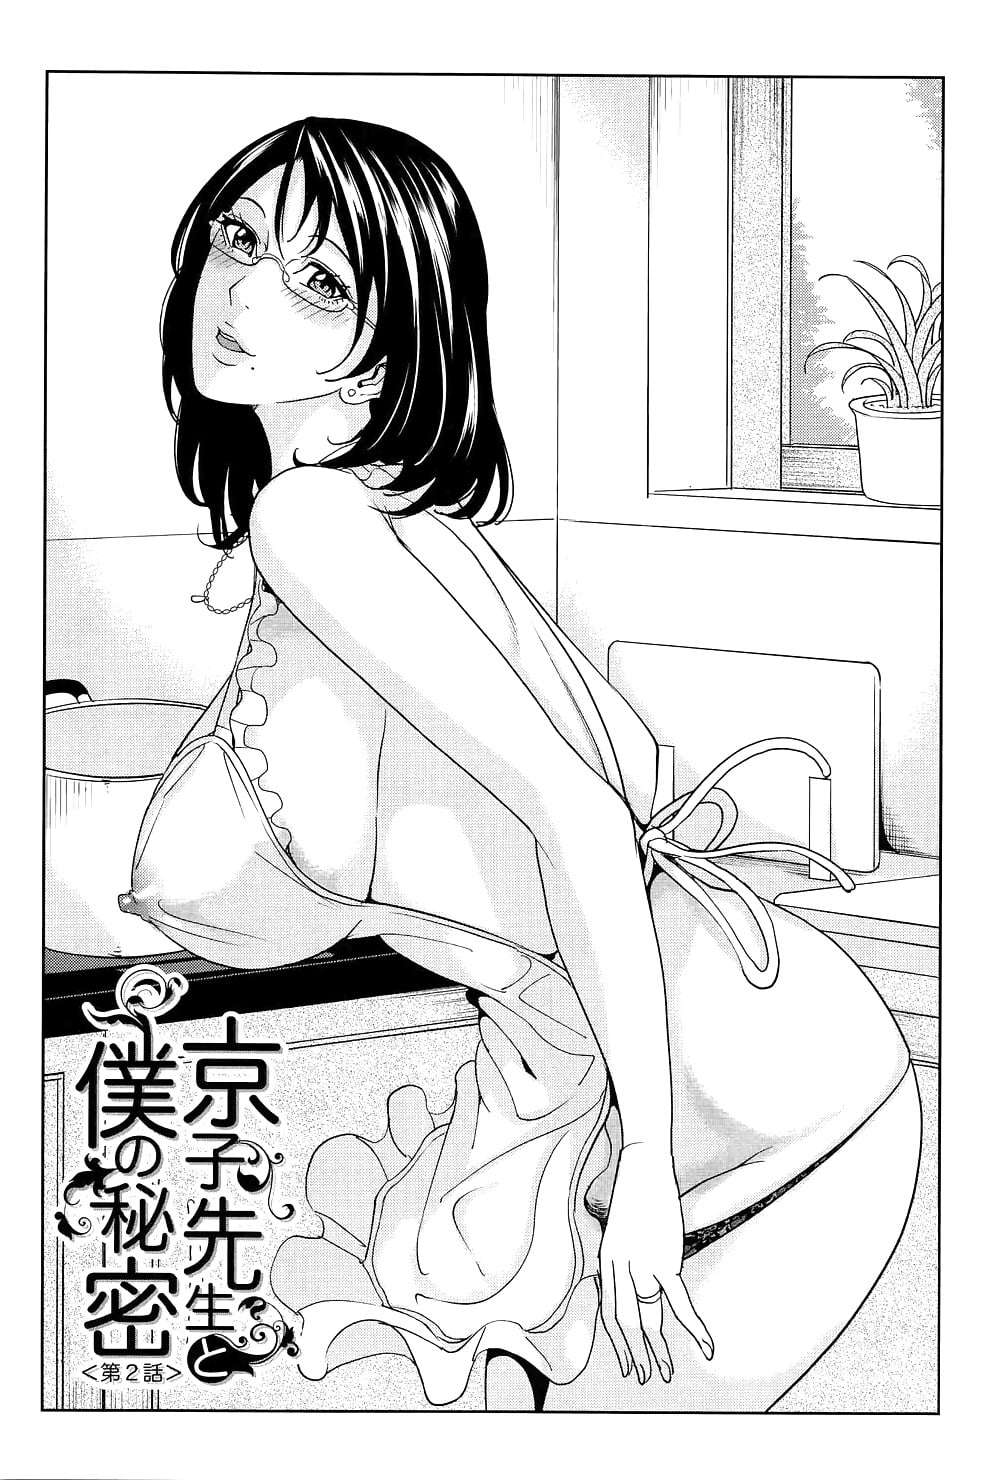 manga 21